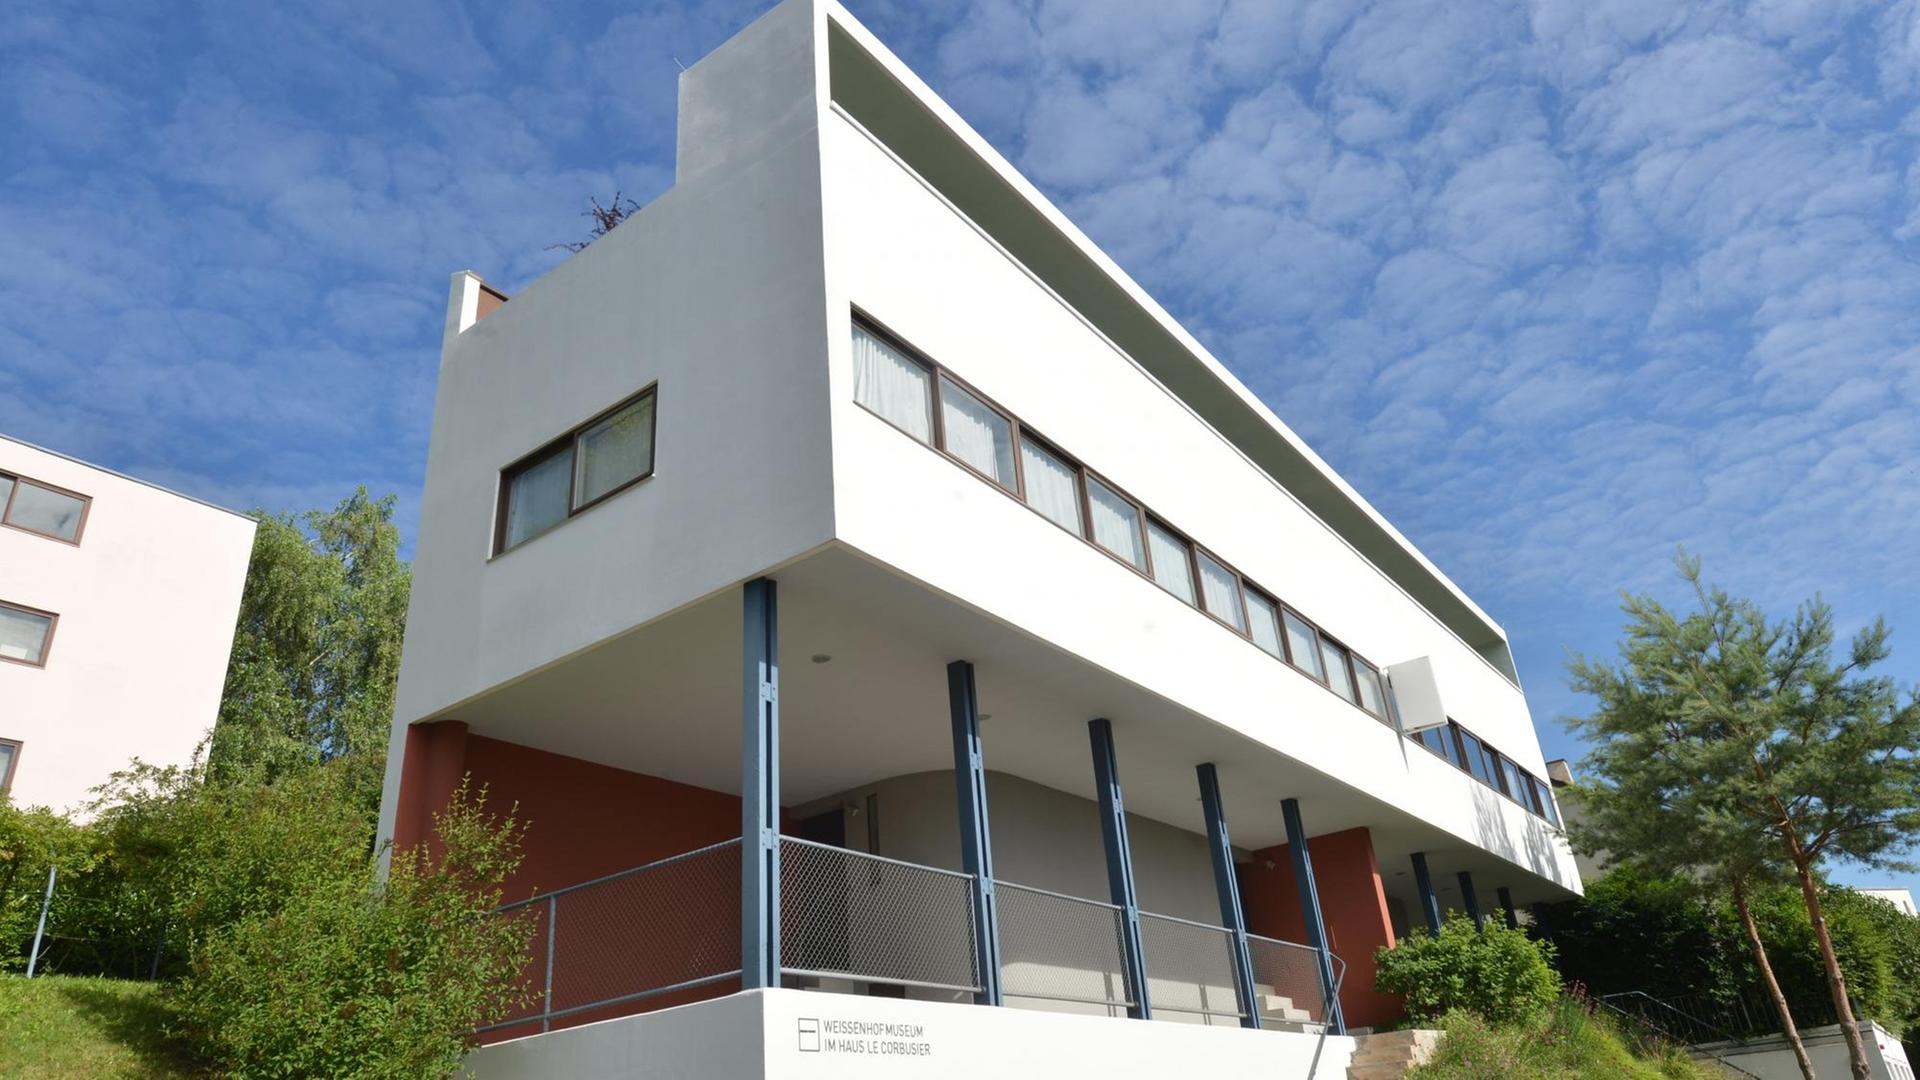 Le-Corbusier-Haus in der Weissenhofsiedlung in Stuttgart.